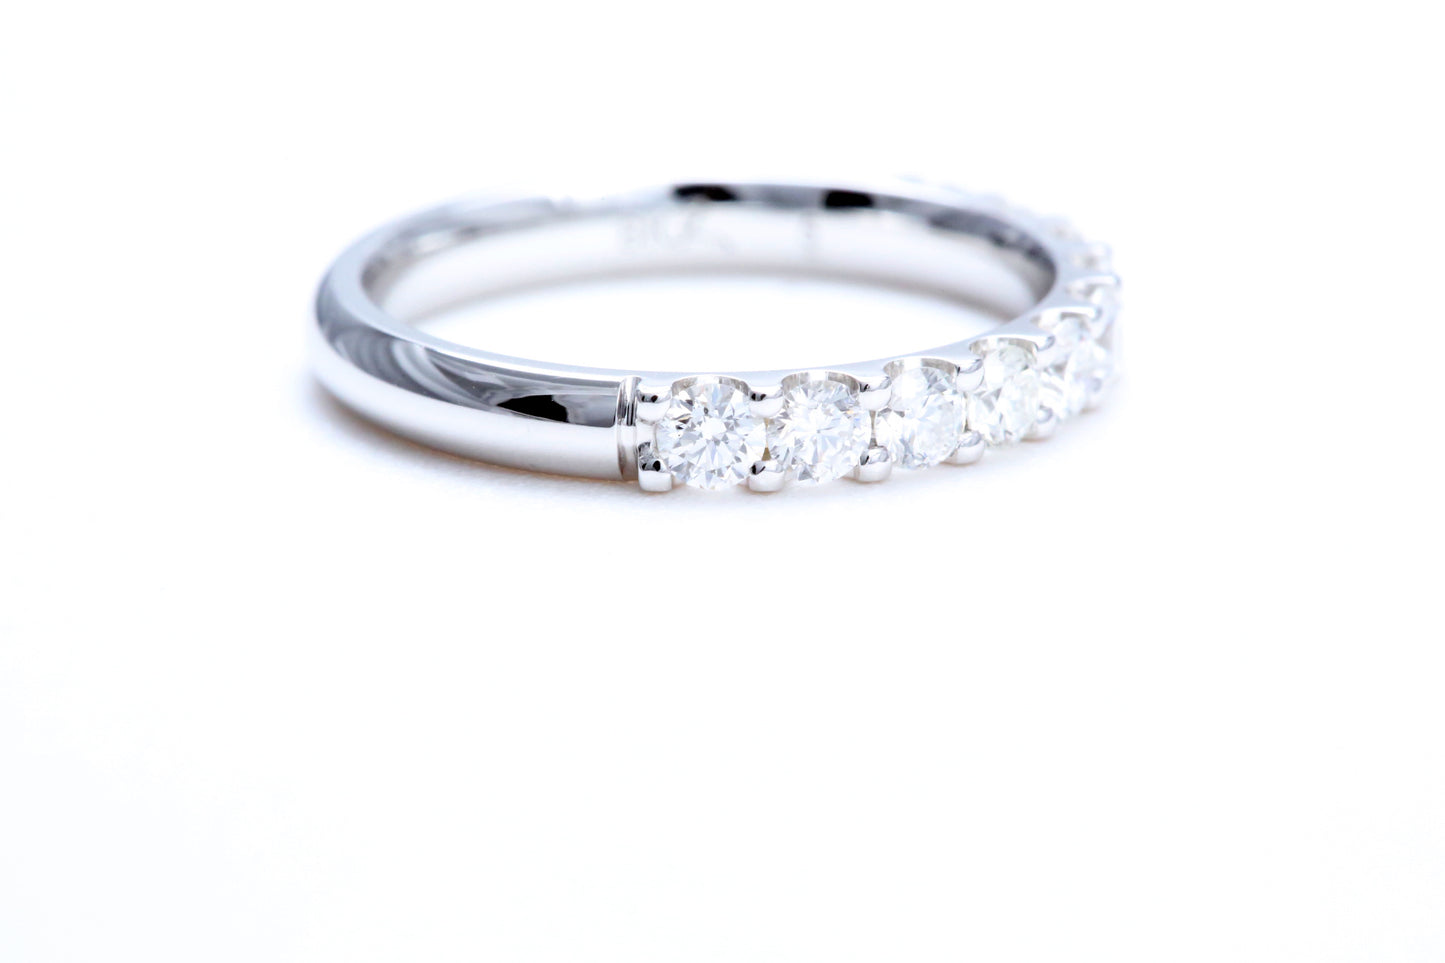 18K 白金極簡主義密釘鑽石戒指，總重量為 3/4 克拉